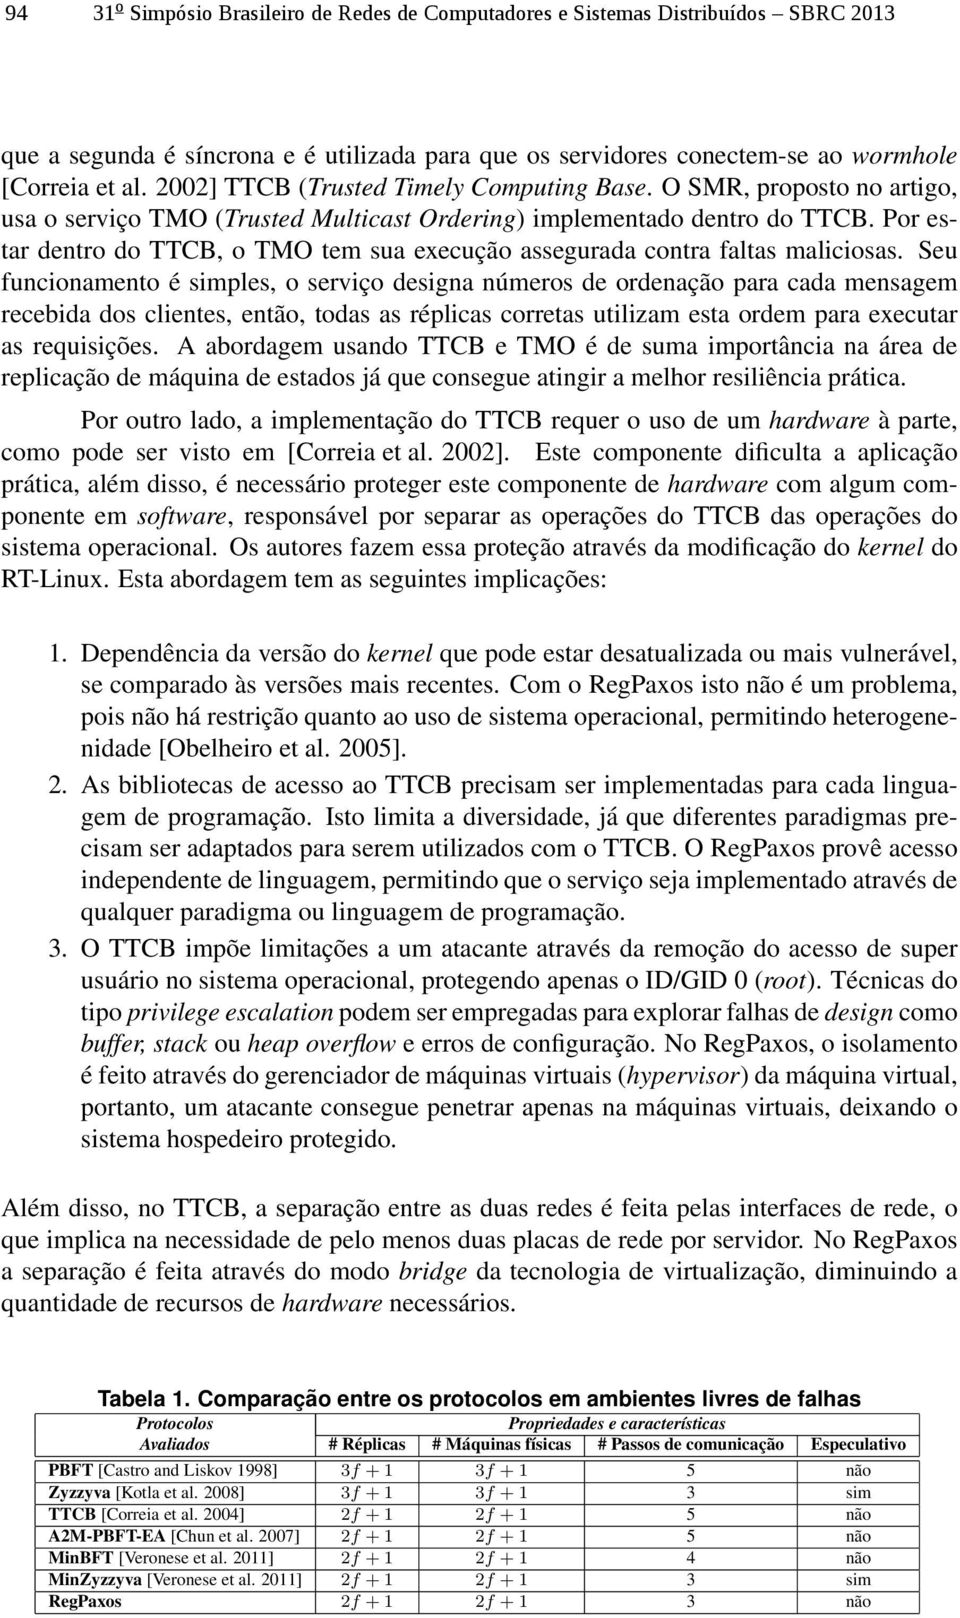 Por estar dentro do TTCB, o TMO tem sua execução assegurada contra faltas maliciosas.